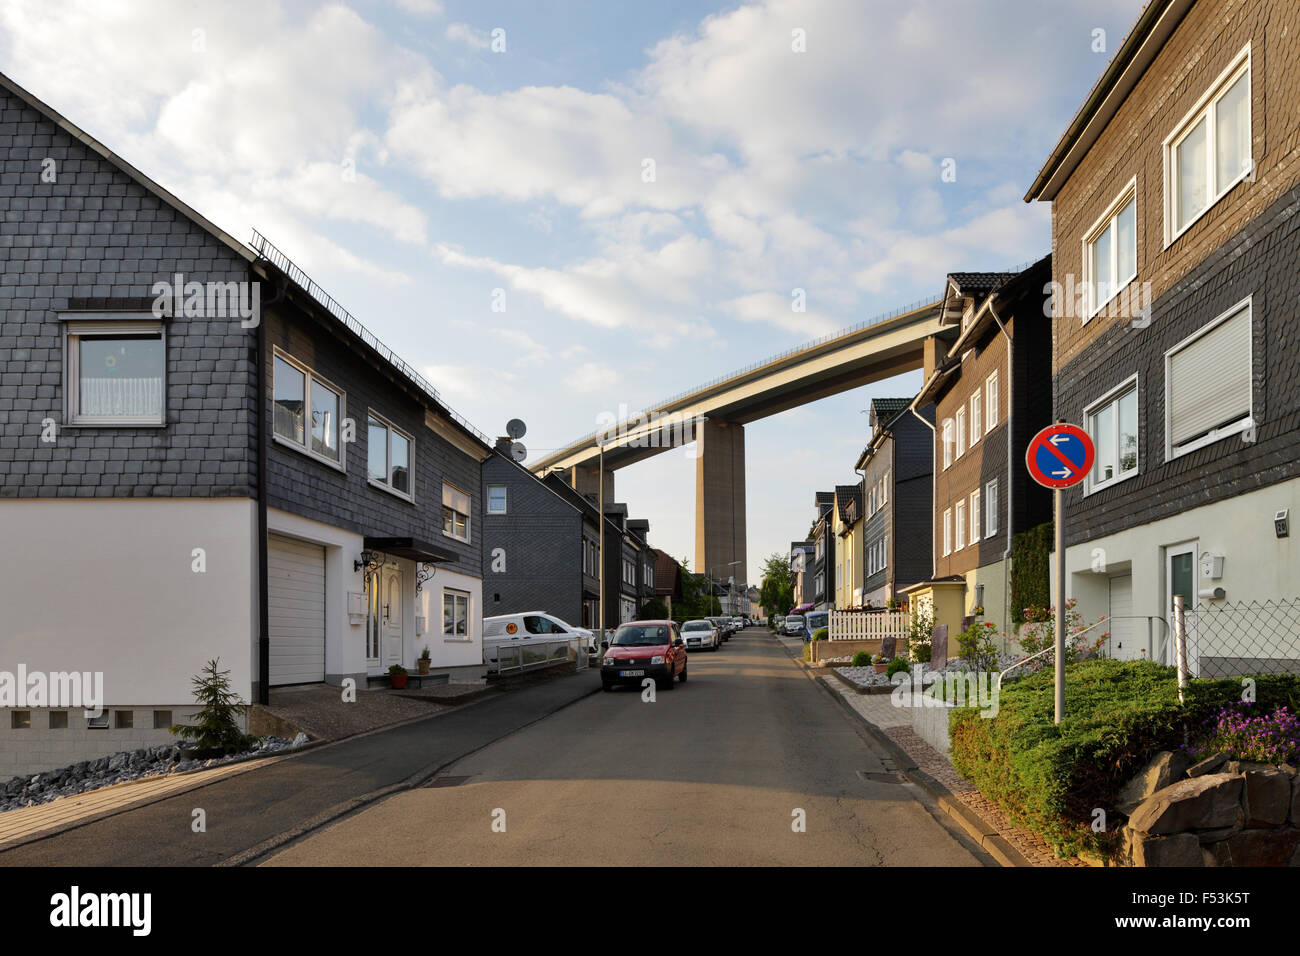 27.05.2015, Siegen, Rhénanie du Nord-Westphalie, Allemagne - rue résidentielle avec Einfamlienhaeusern Siegtalbruecke et l'A45 dans la région de Siegen. 00P150527D136CAROEX.JPG - pas à vendre dans la région de G E R M A N Y, A U S T R I A, S W I T Z E R L A N D [communiqué de modèle : NON APPLICABLE, DES BIENS : NON (c) agence photo caro / http://www.caro-images.pl, Info@carofoto.pl, Paris V René - En cas d'utilisation de la photo pour les non-fins journalistiques, veuillez contacter l'agence - l'image est l'objet d'image !] Banque D'Images